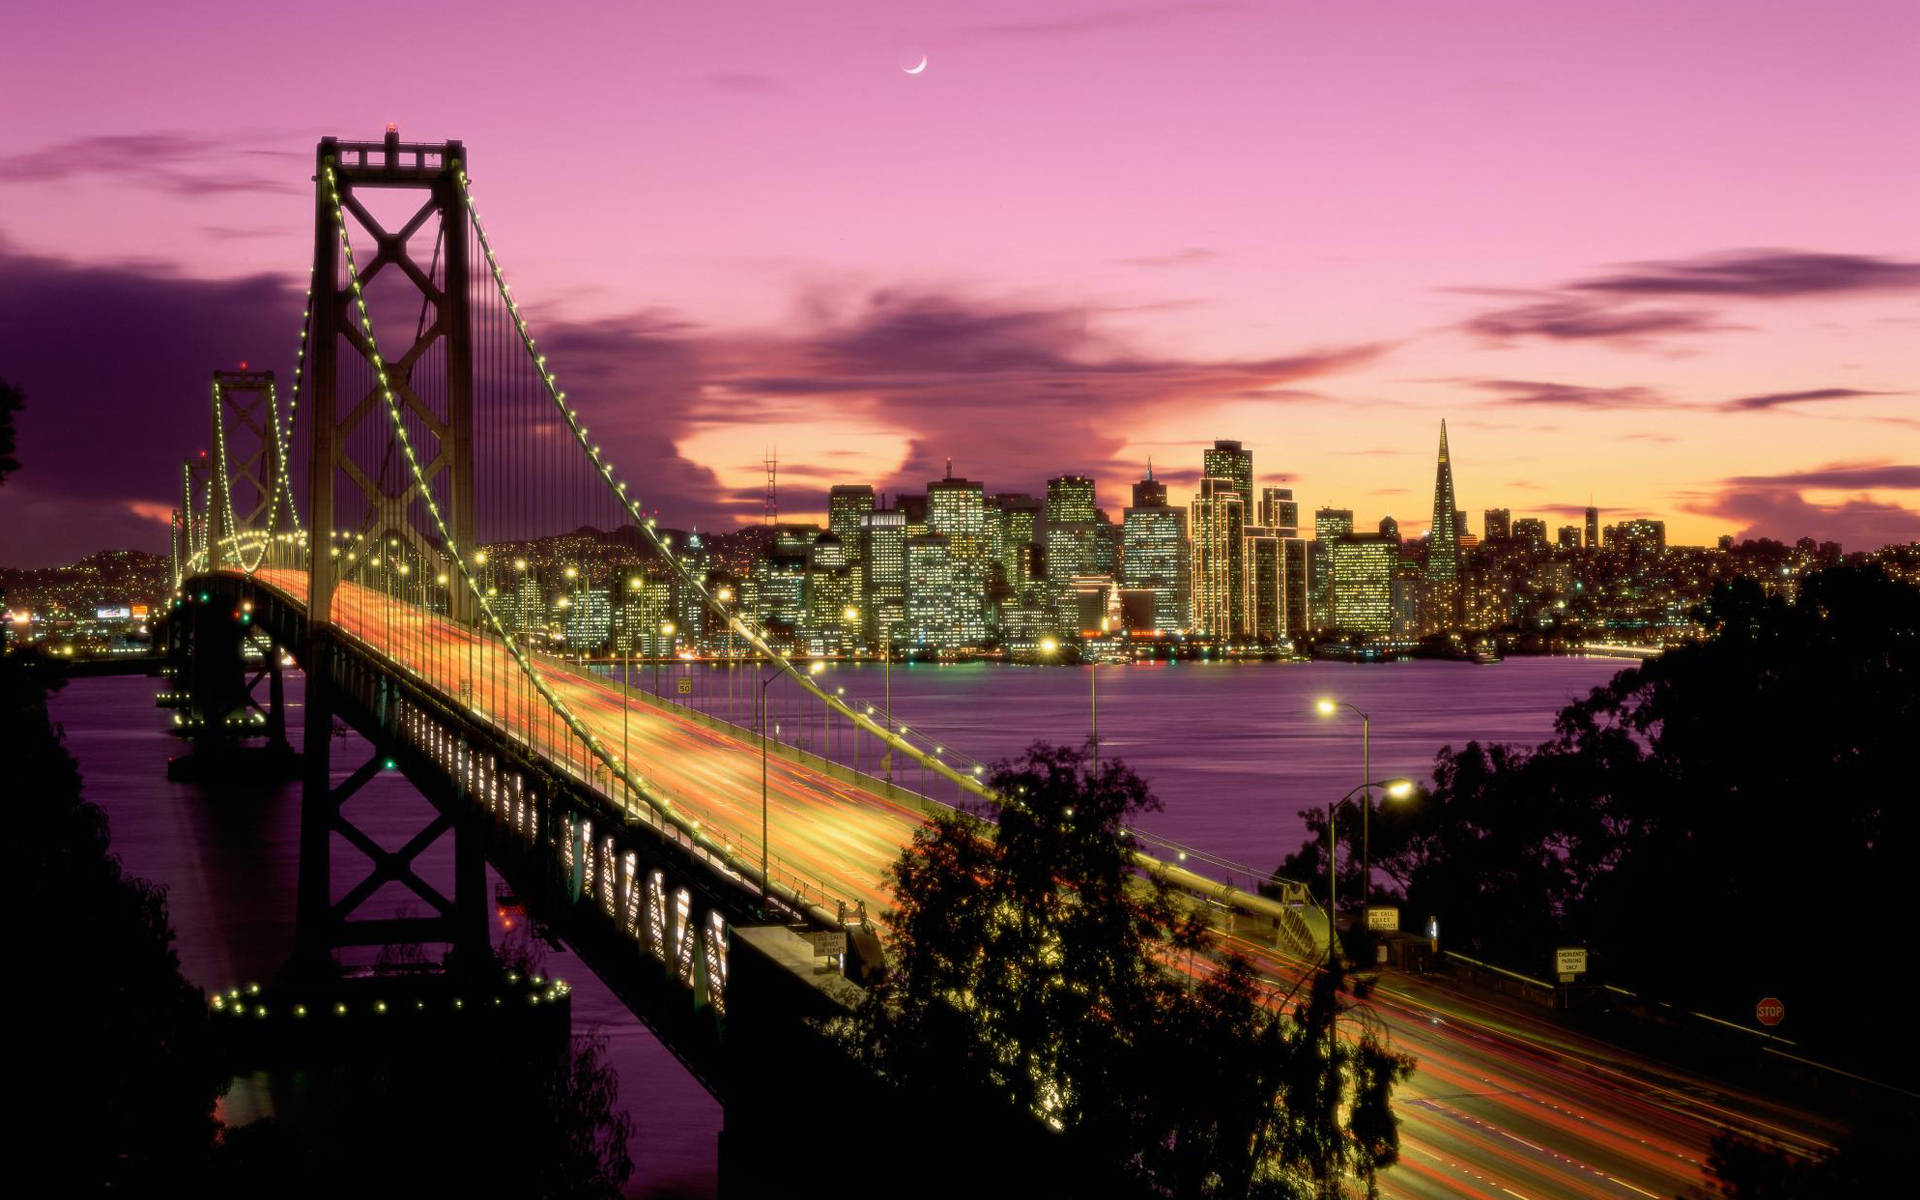 Njutav Det Ikoniska Stadssiluetten I San Francisco I Hd. Wallpaper